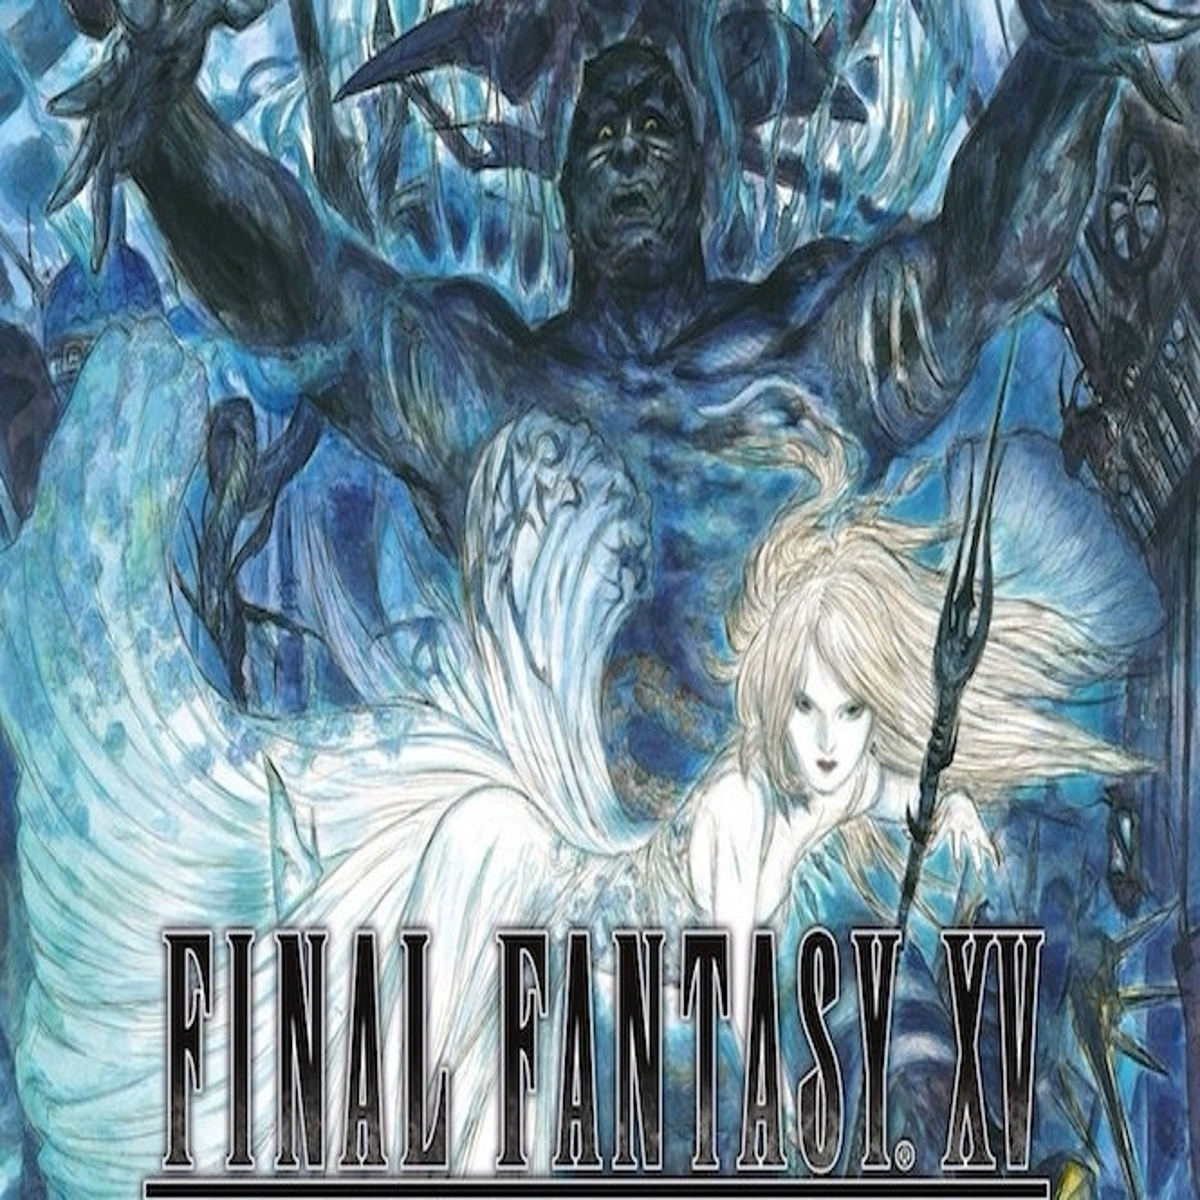 Final Fantasy XV Royal Edition - PlayStation 4 